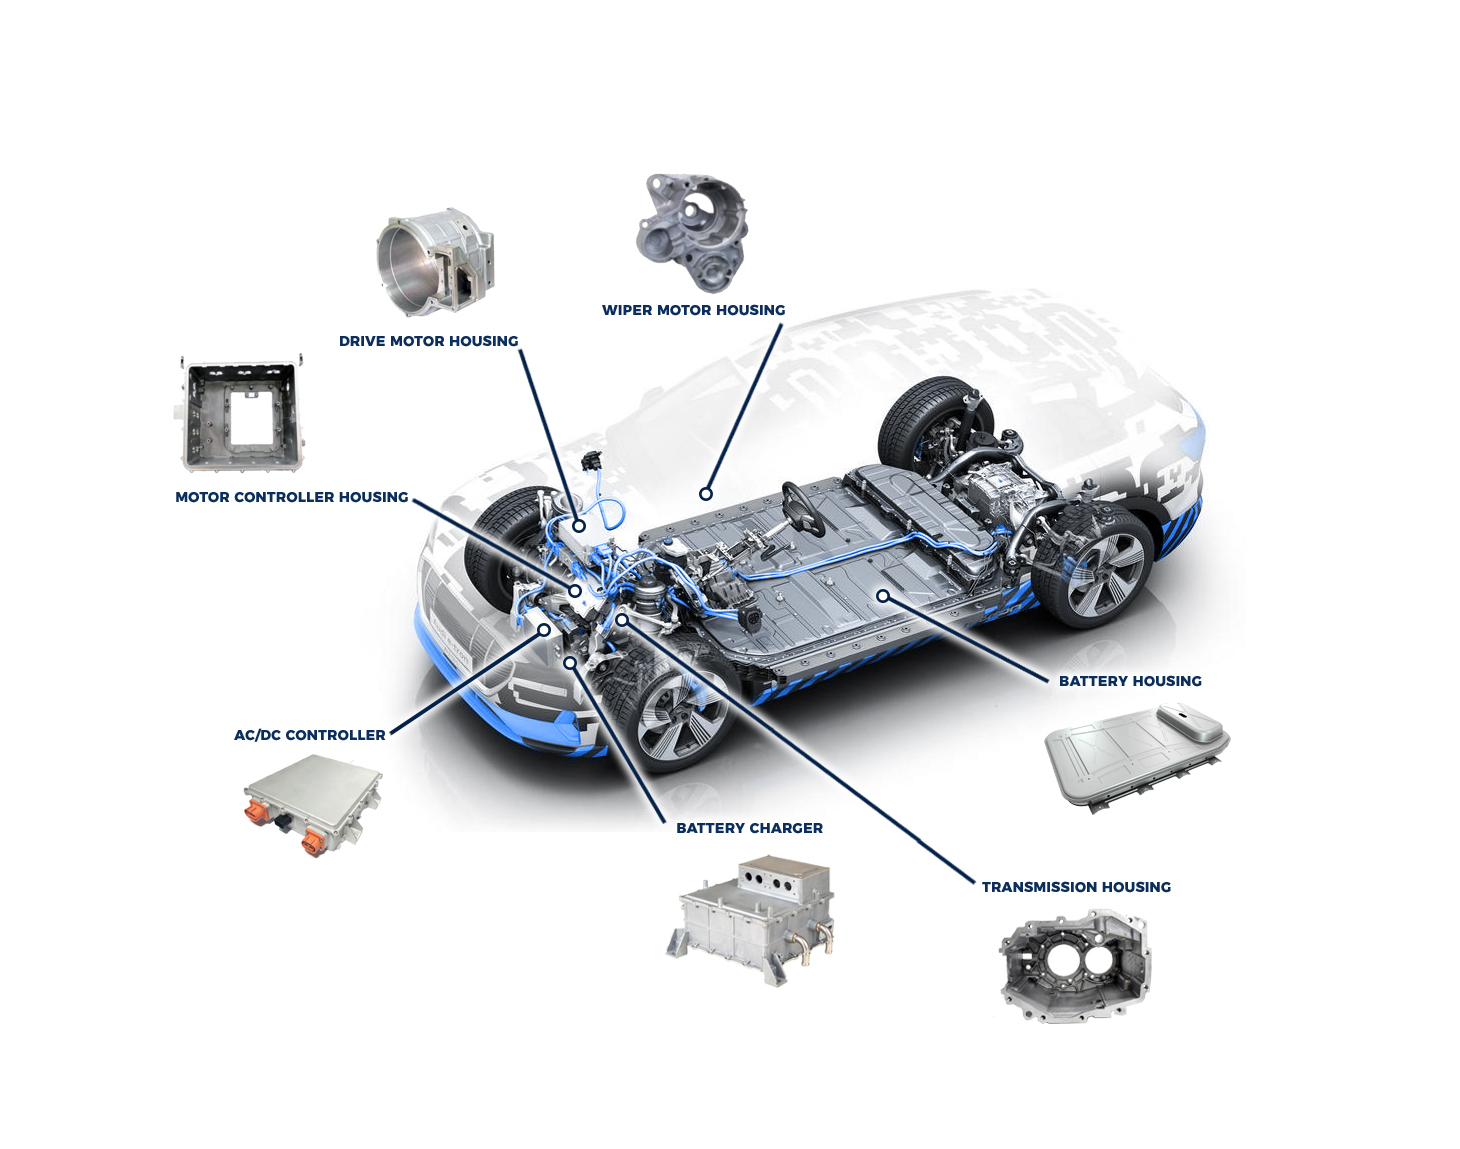 Les trois premières applications de moulage en aluminium pour les véhicules électriques et les communications 5g